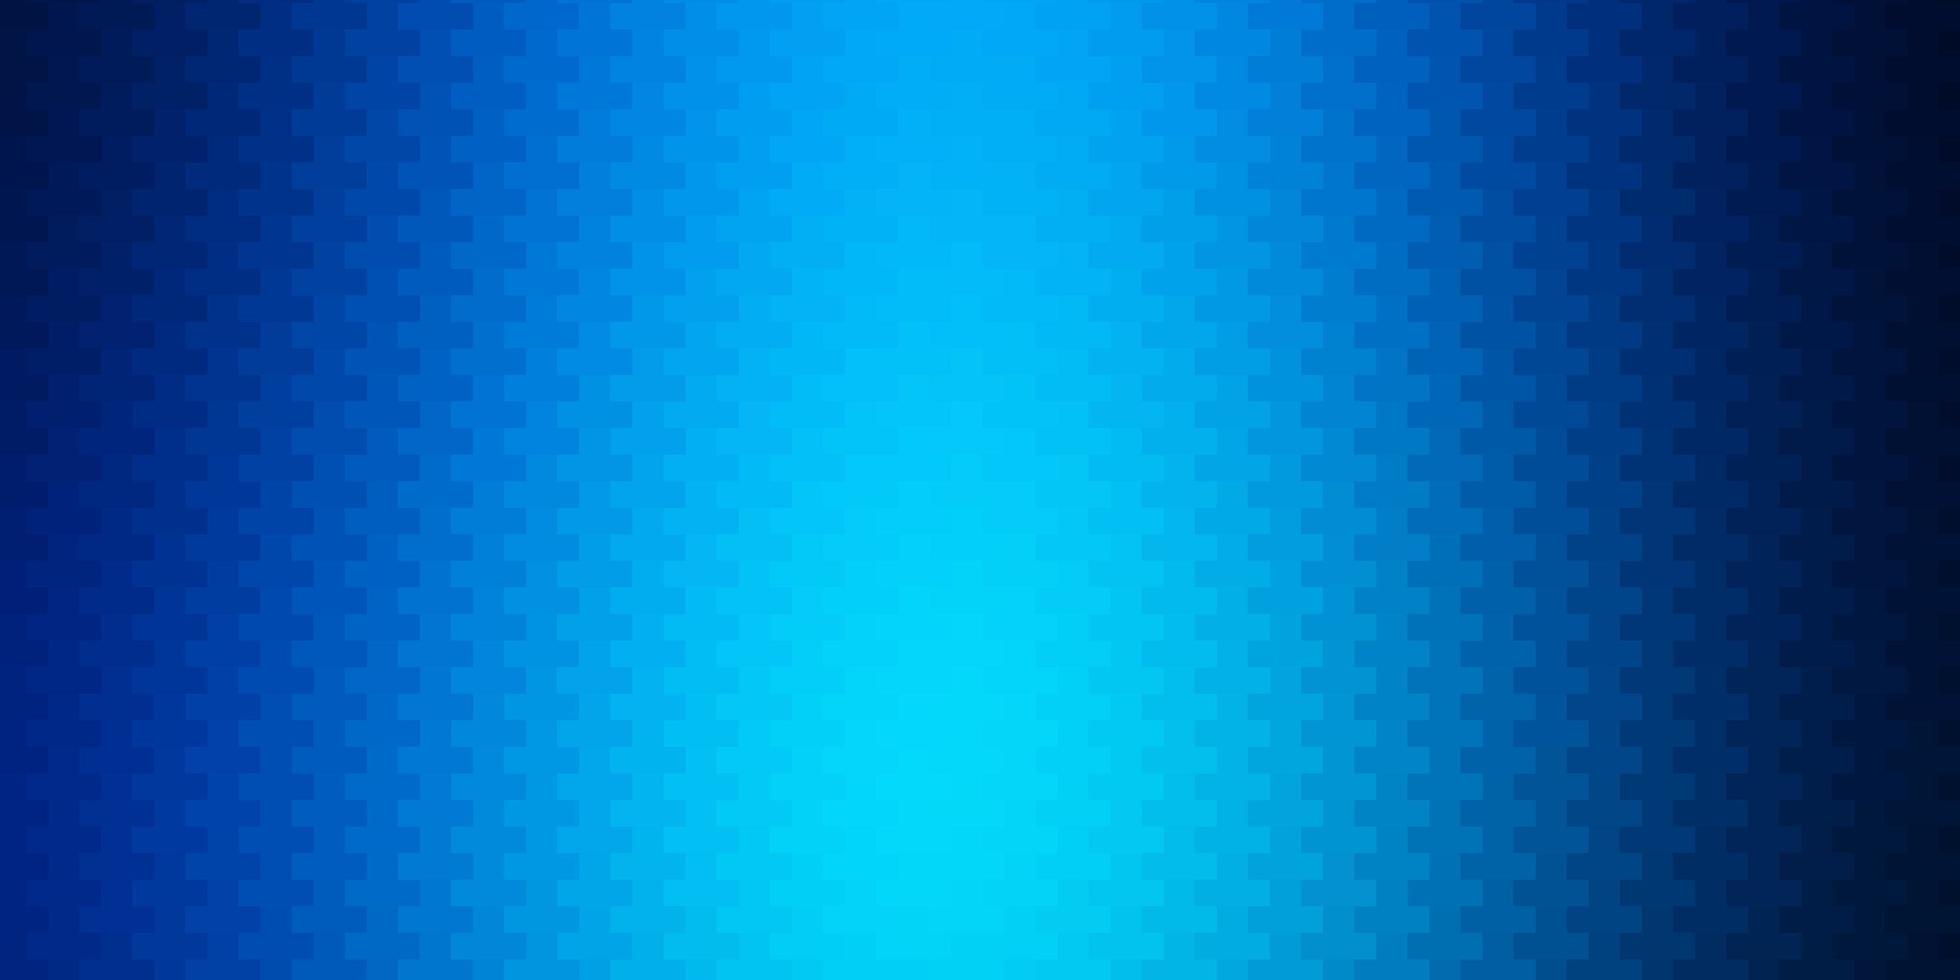 texture de vecteur bleu foncé dans un style rectangulaire